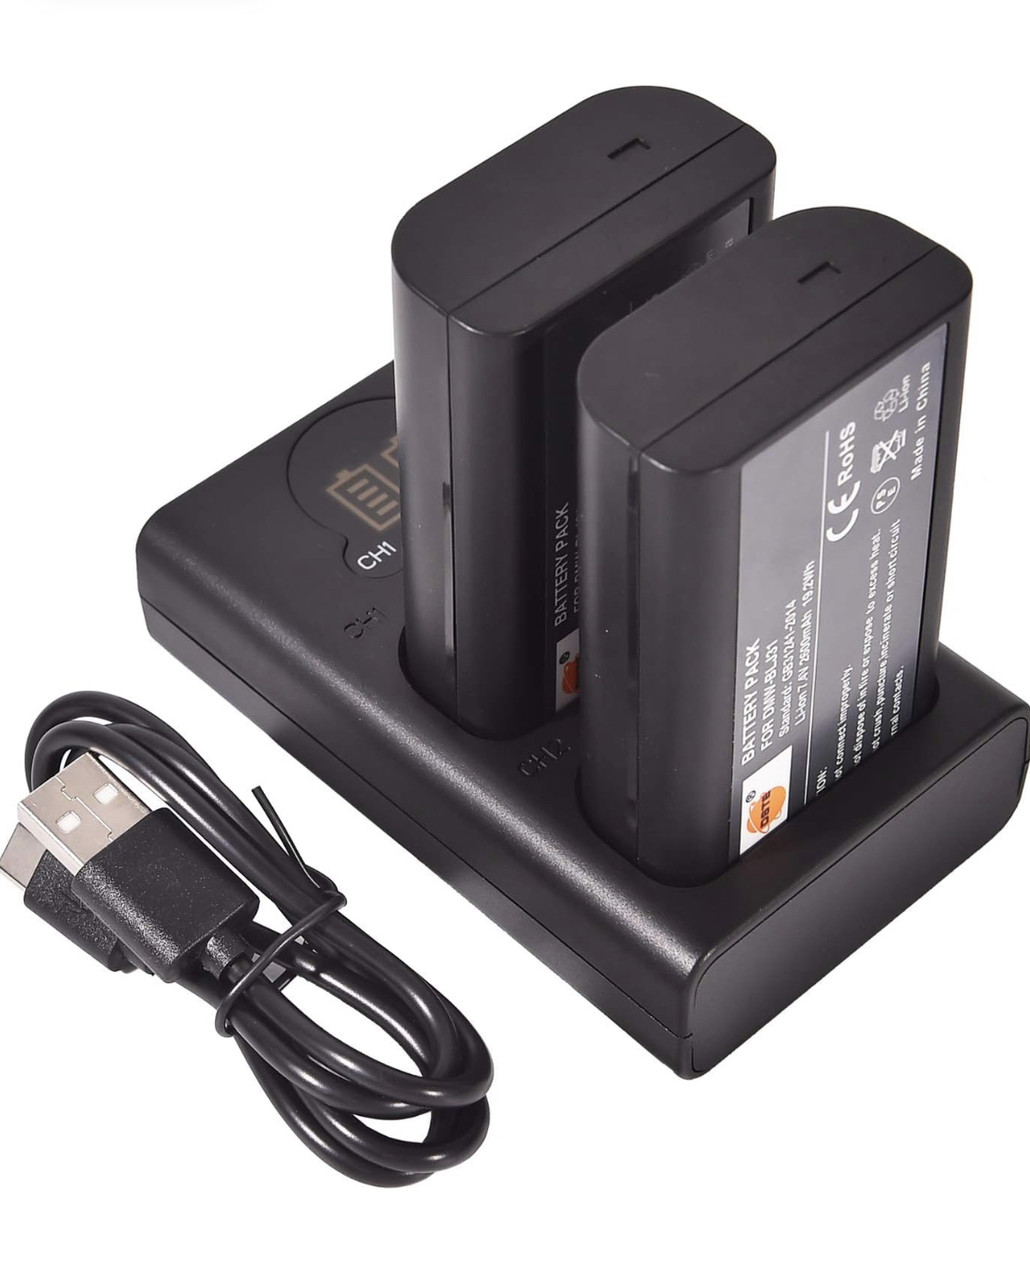 DSTE 2 змінні акумулятори DMW-BLJ31 + зарядний пристрій із двома USB-портами та РК-дисплеєм